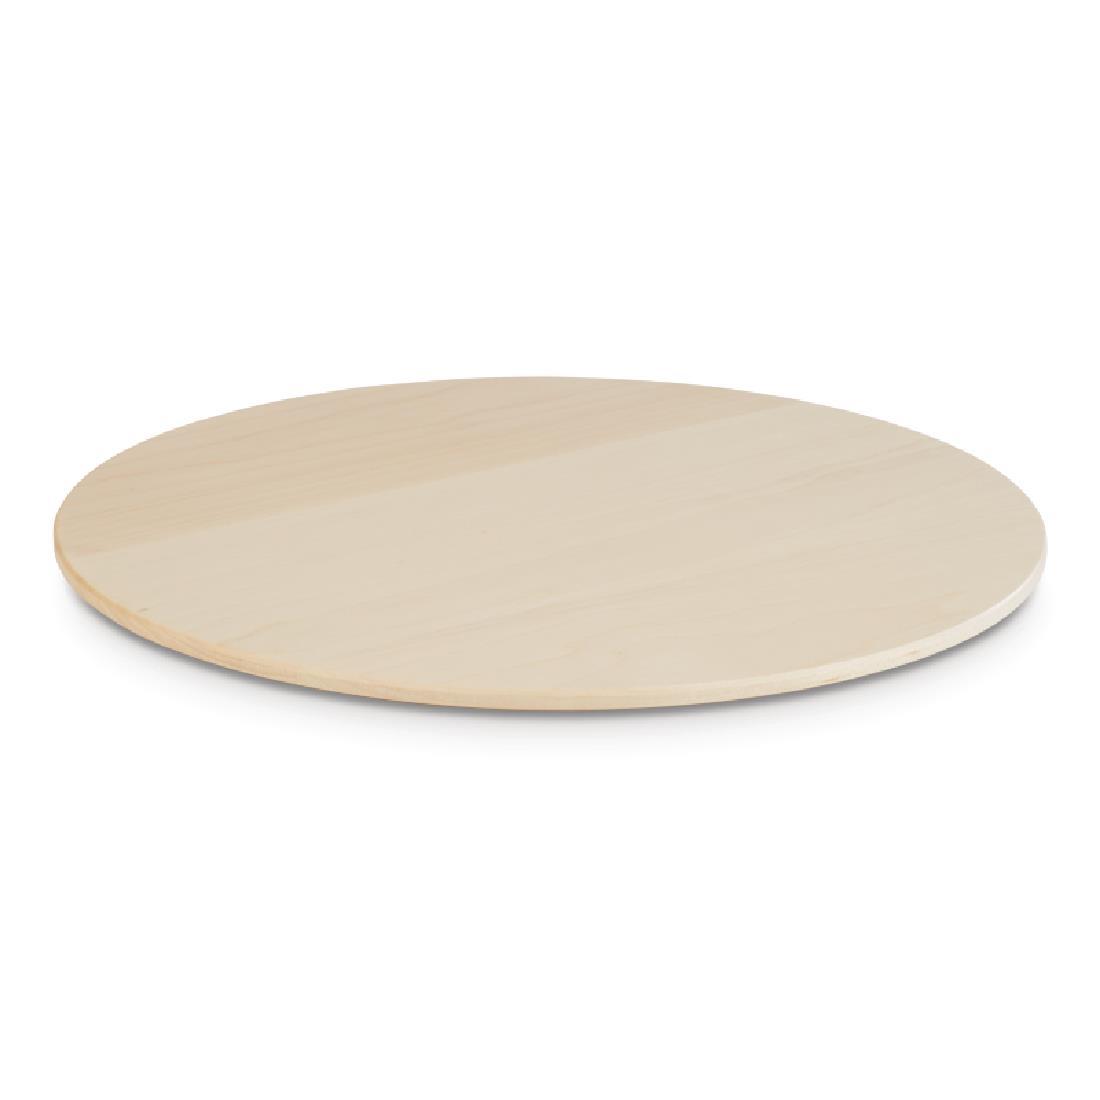 APS+ Maple Wood Platter 300mm - Each - DE554 - 1